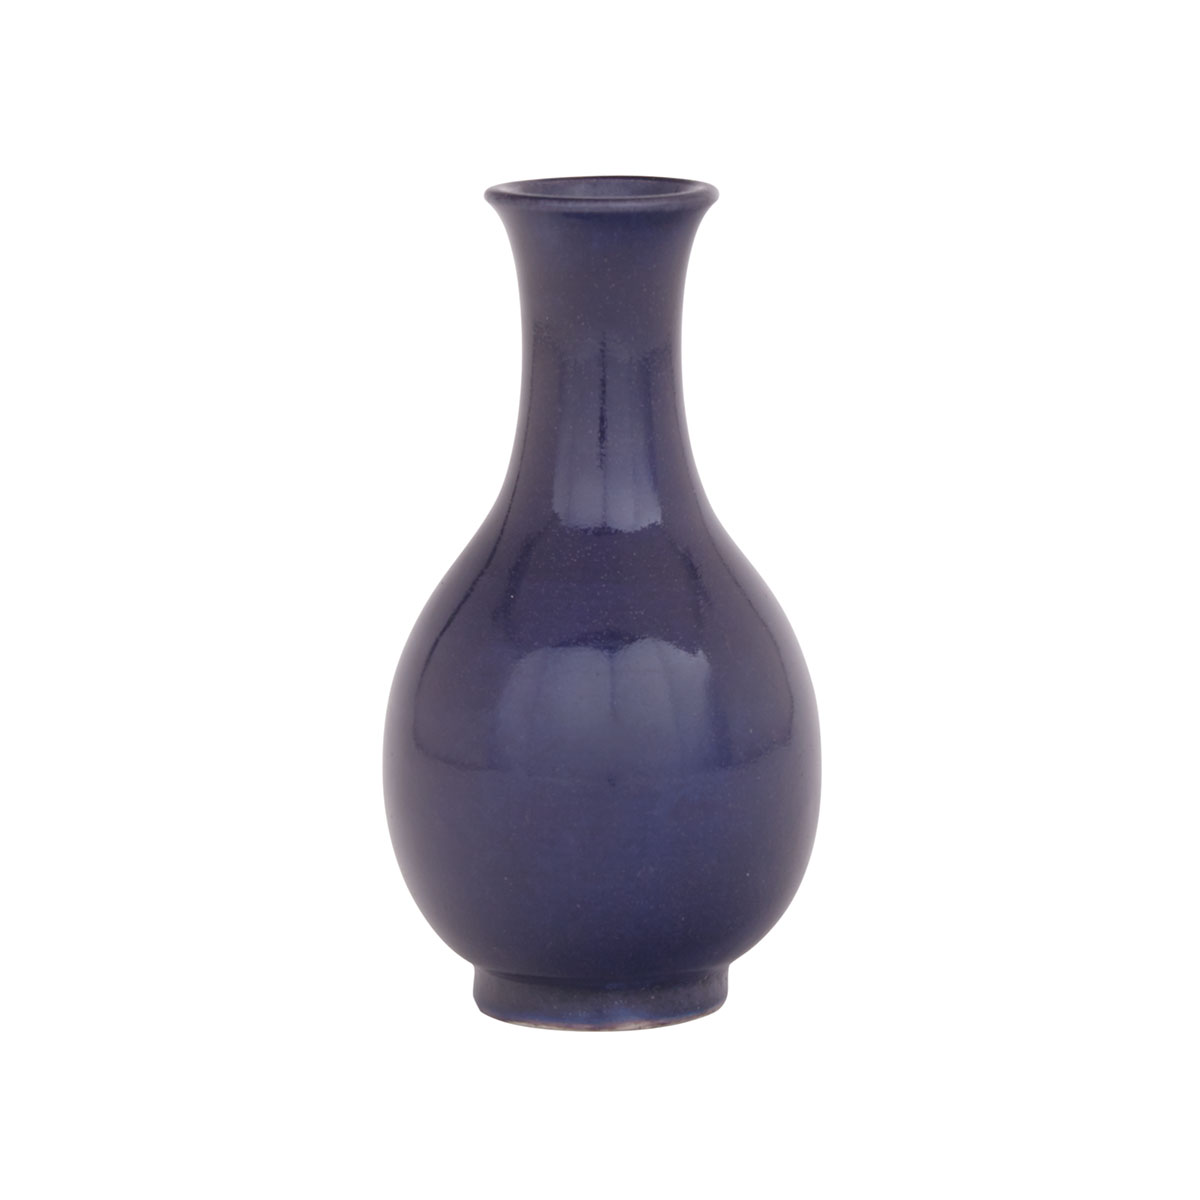 Sacrificial Blue Glazed Bottle Vase, 18th Century